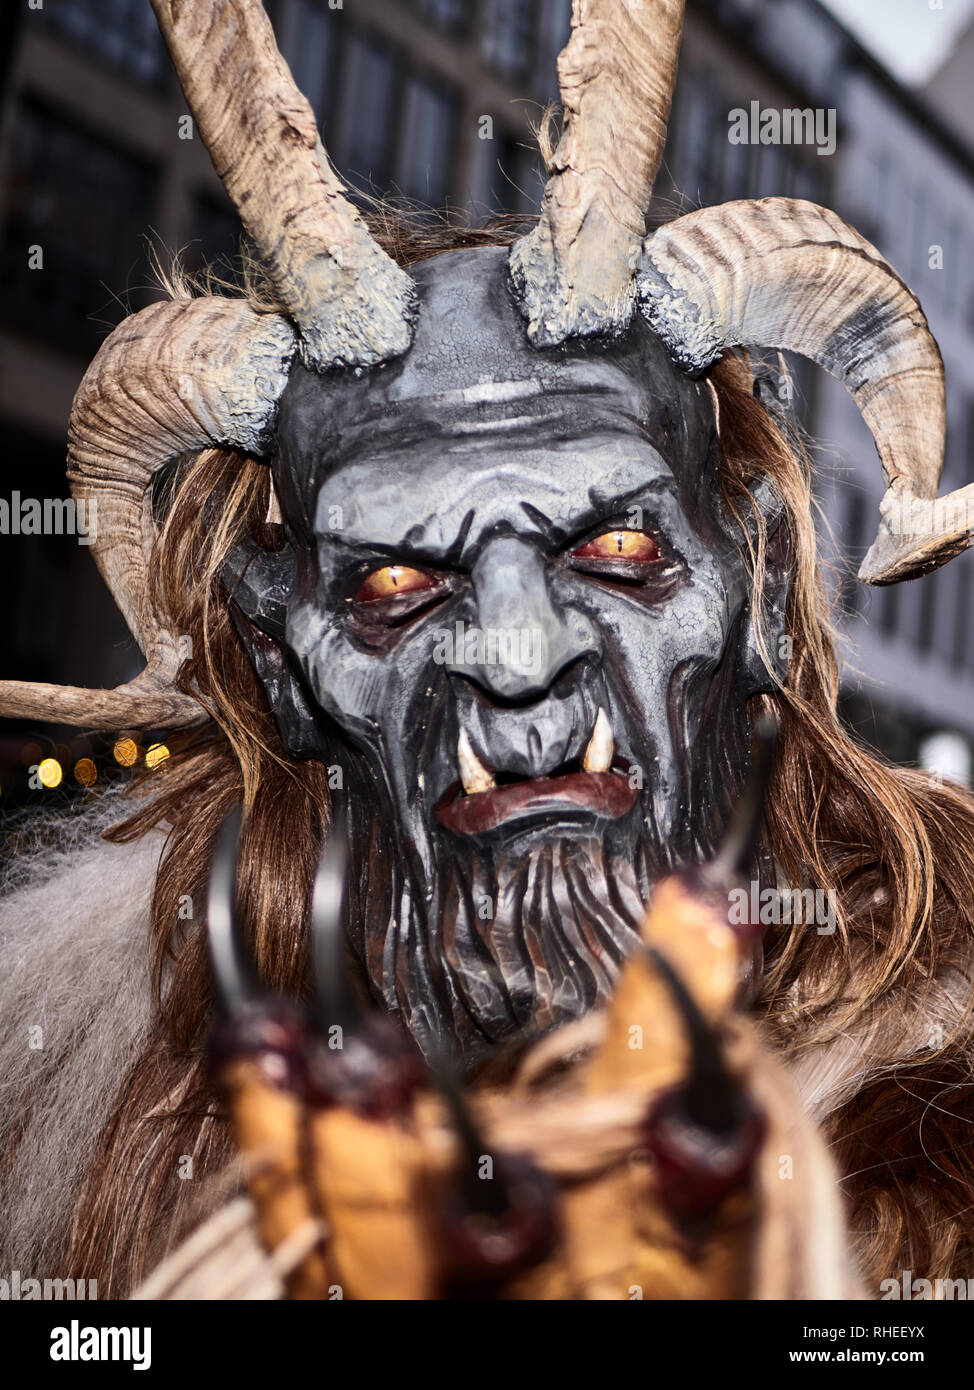 Dezember 2018 Krampus aus München. Dieser ein Teufel Masken aus Holz  gemacht, Menschen und besonders Kinder, die von der Legende, die Sie essen,  neigen, erschrecken Stockfotografie - Alamy